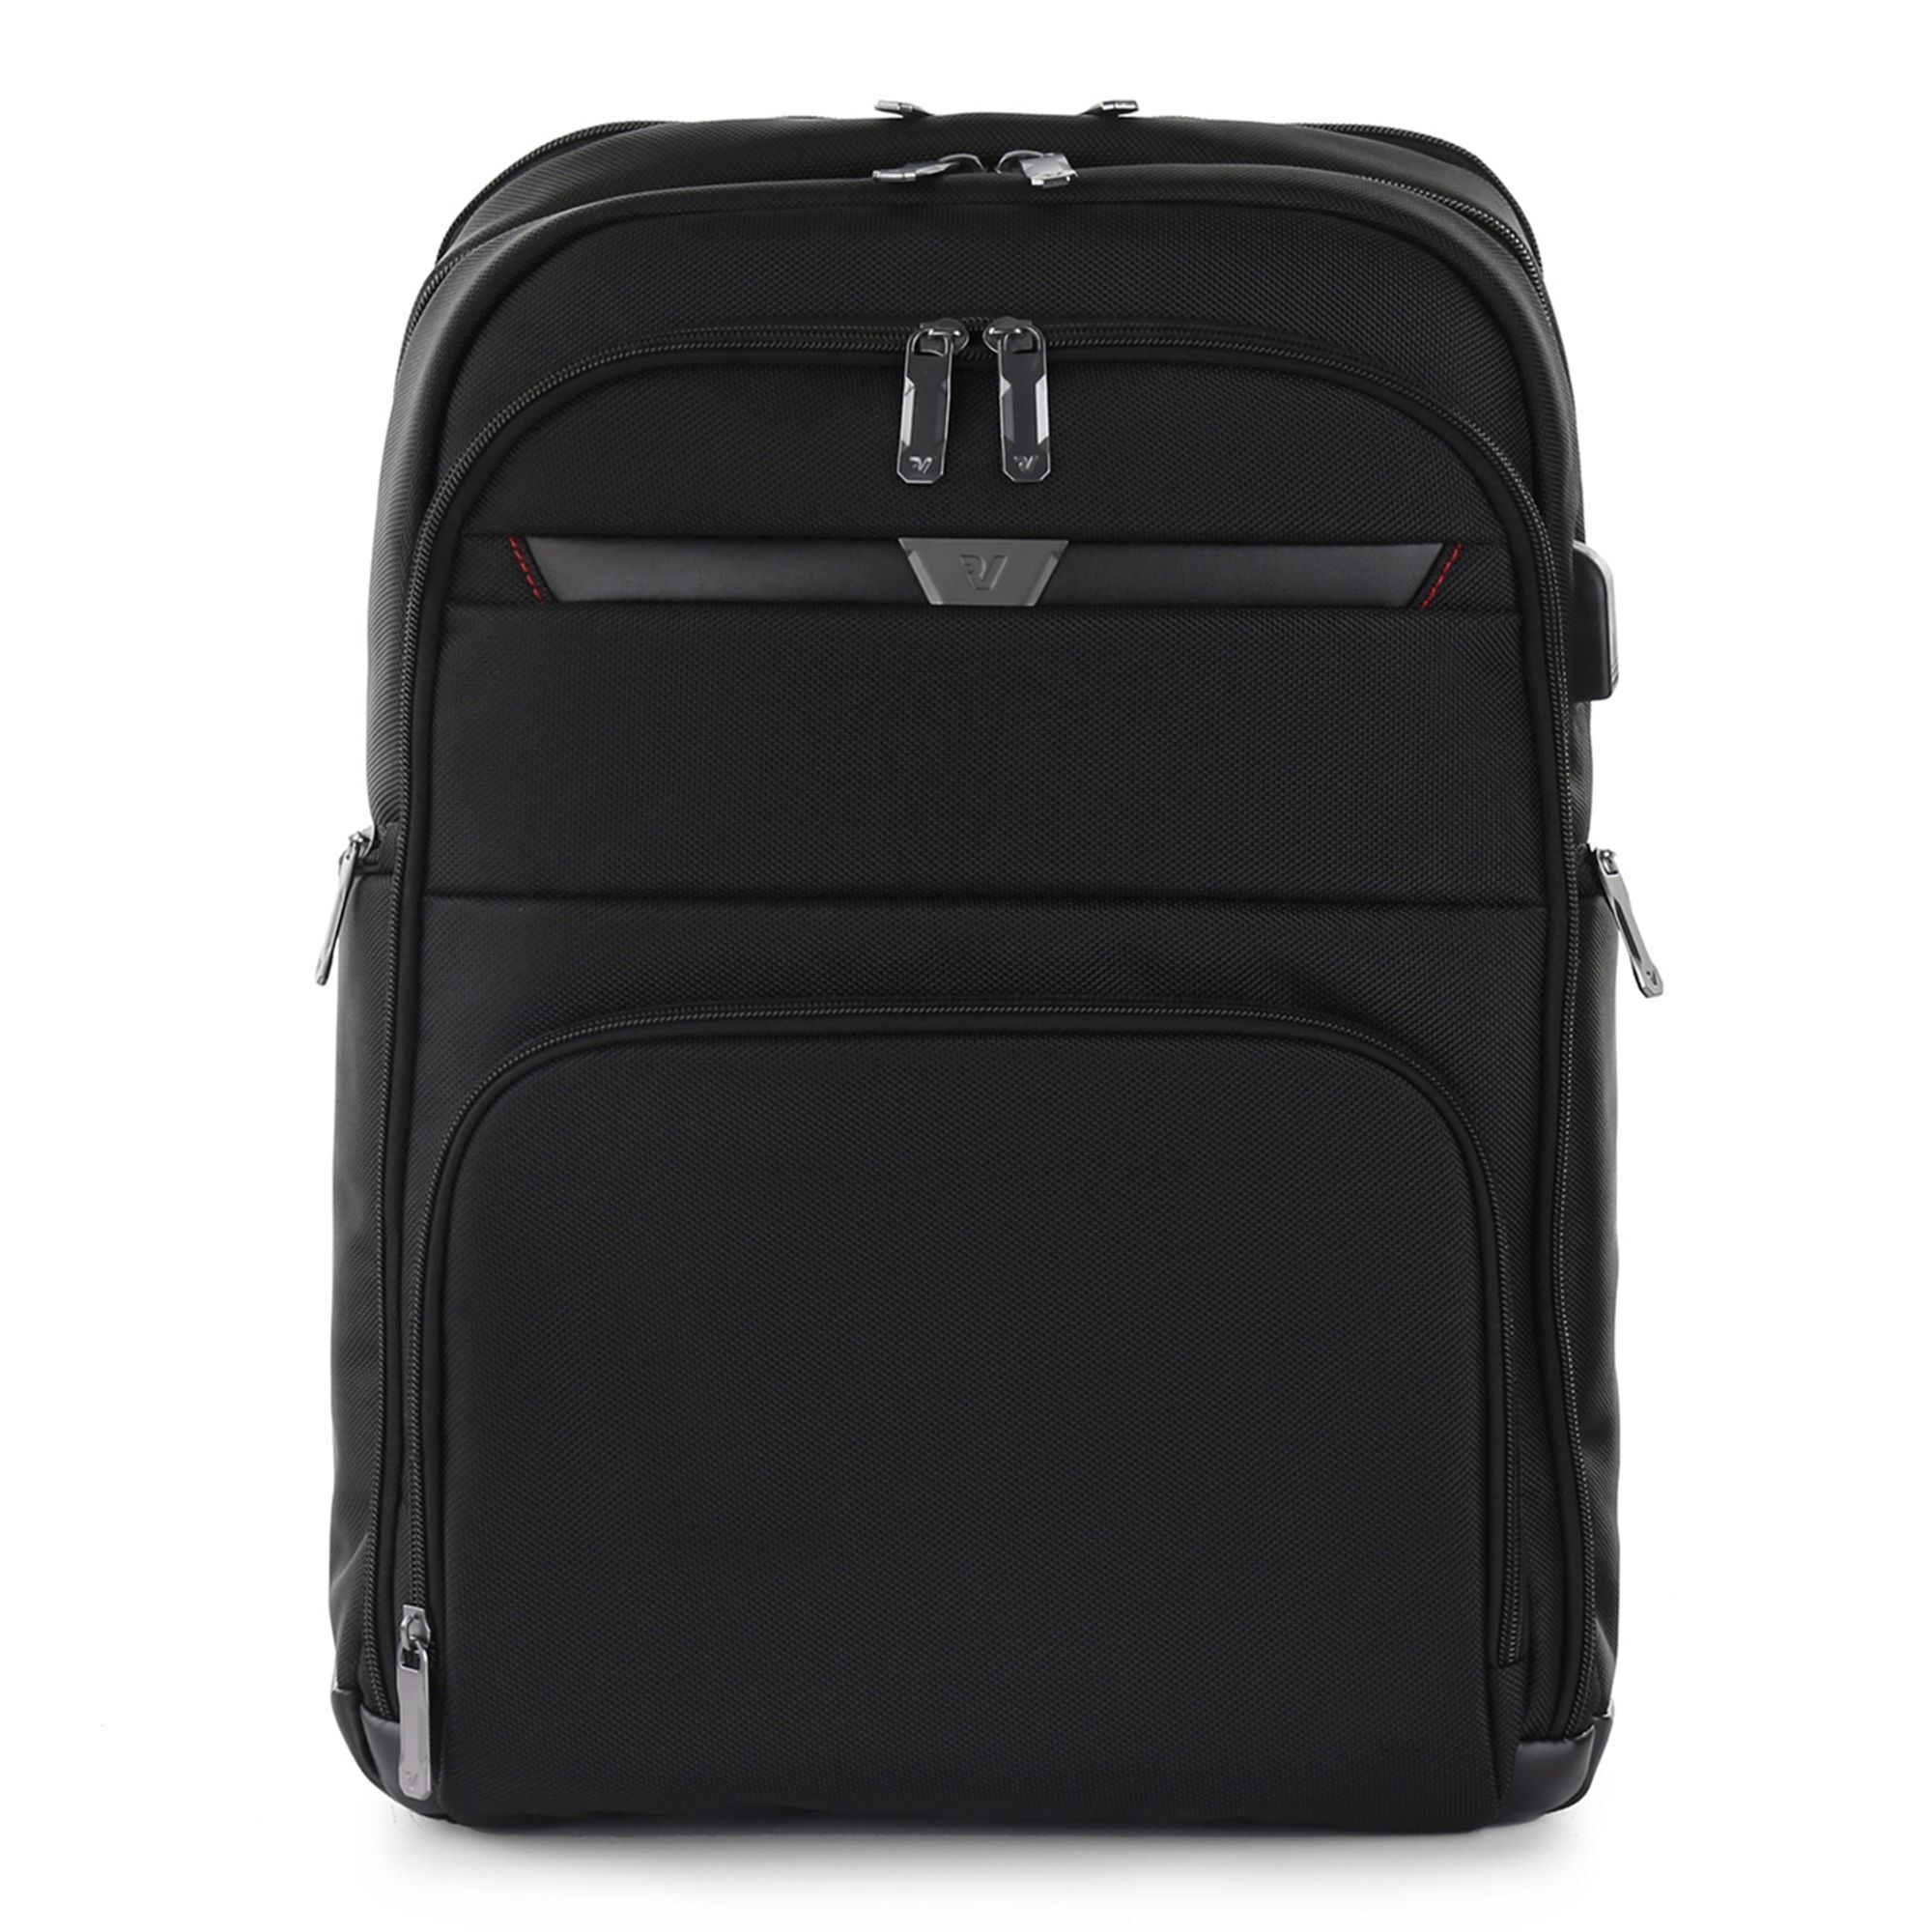 Рюкзак Roncato Biz 4.0 45 cm Laptopfach, черный